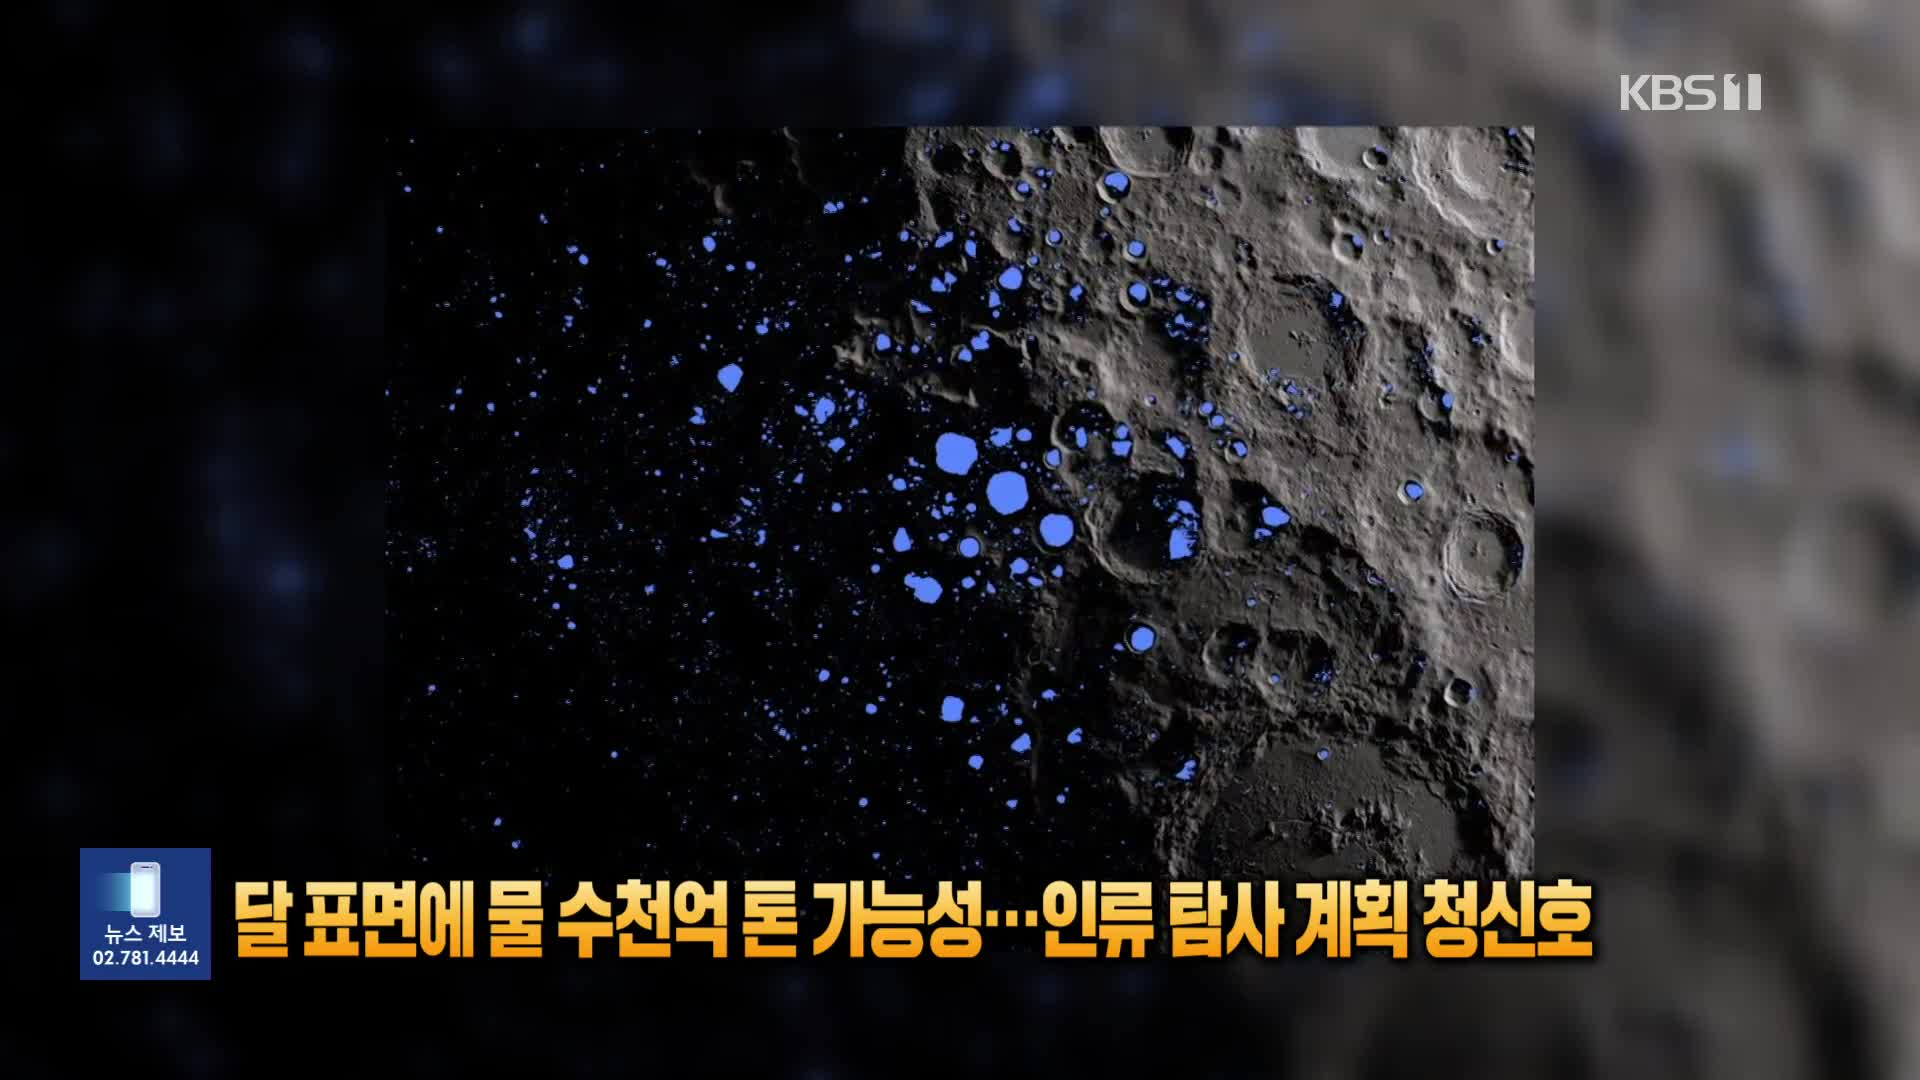 [잇슈 SNS] 달 표면에 물 수천억톤 가능성…인류 탐사 계획 청신호 